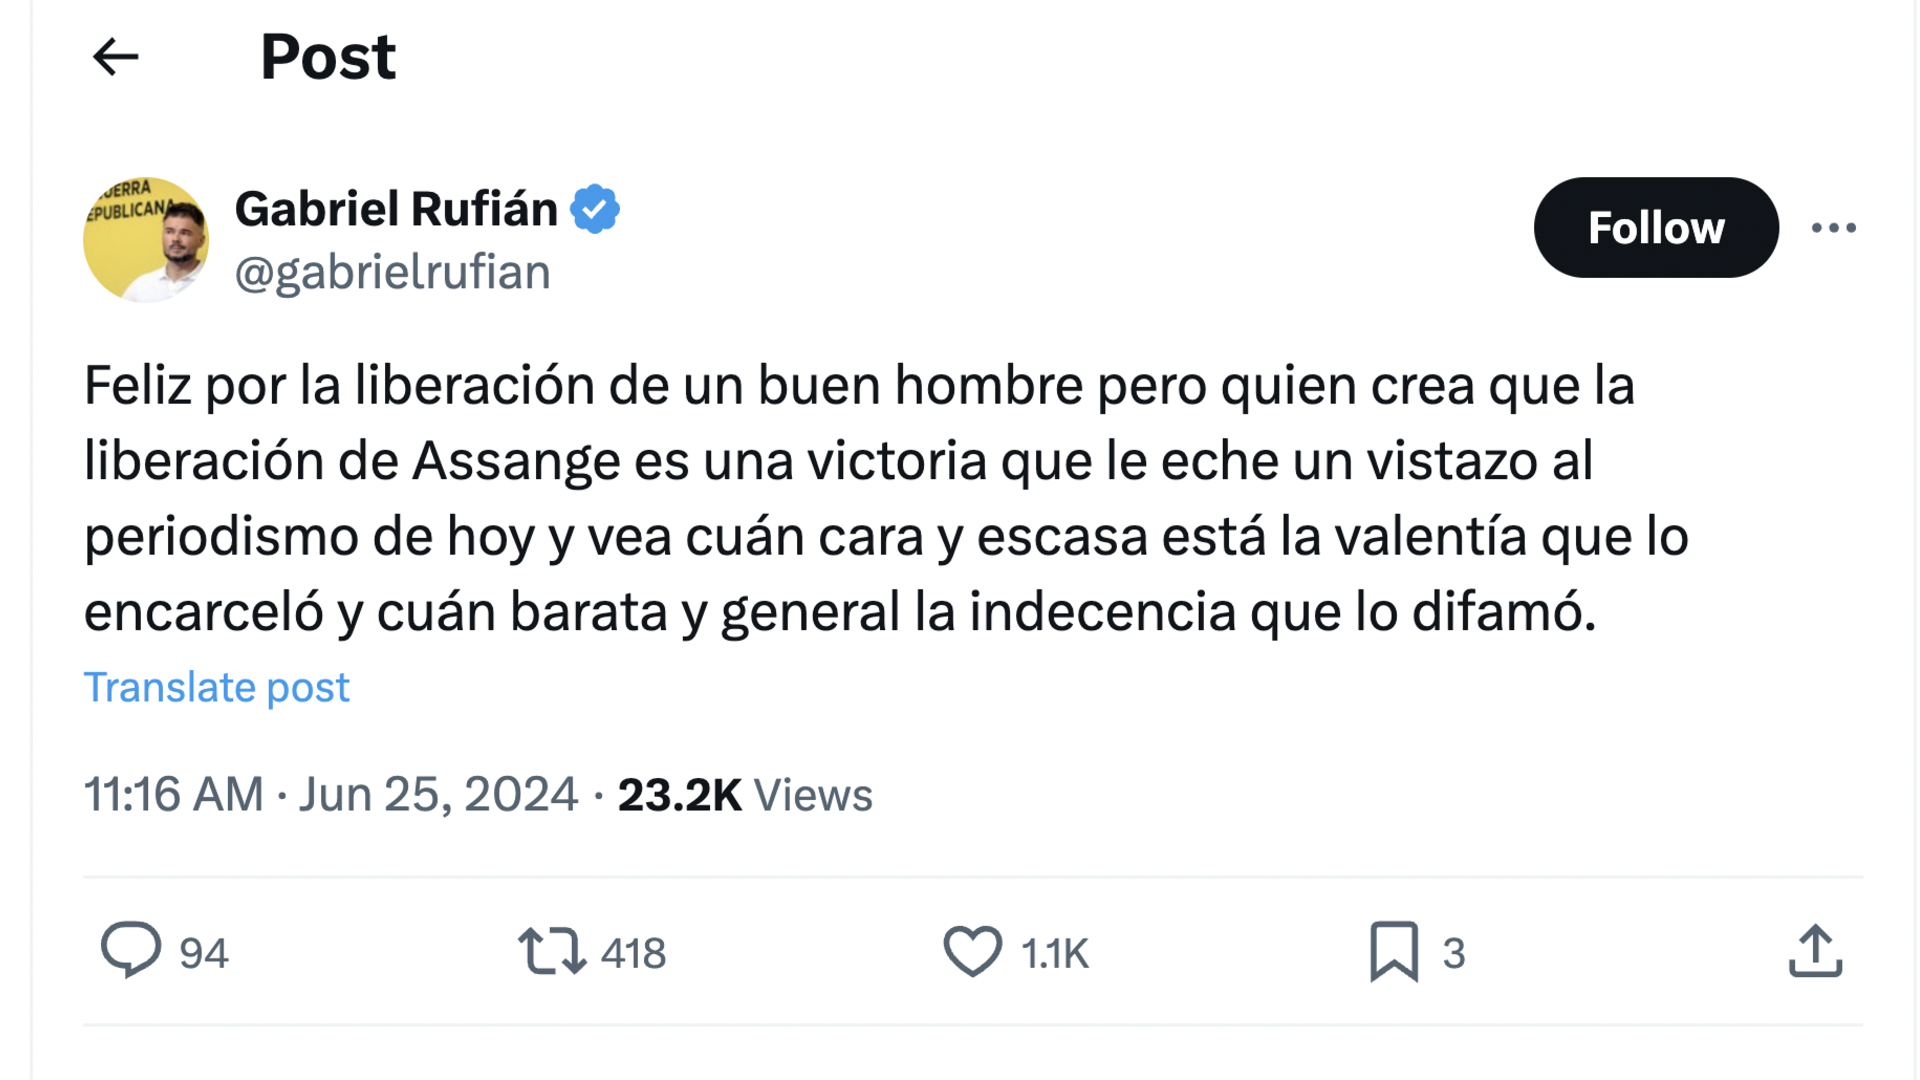 El mensaje de Rufián